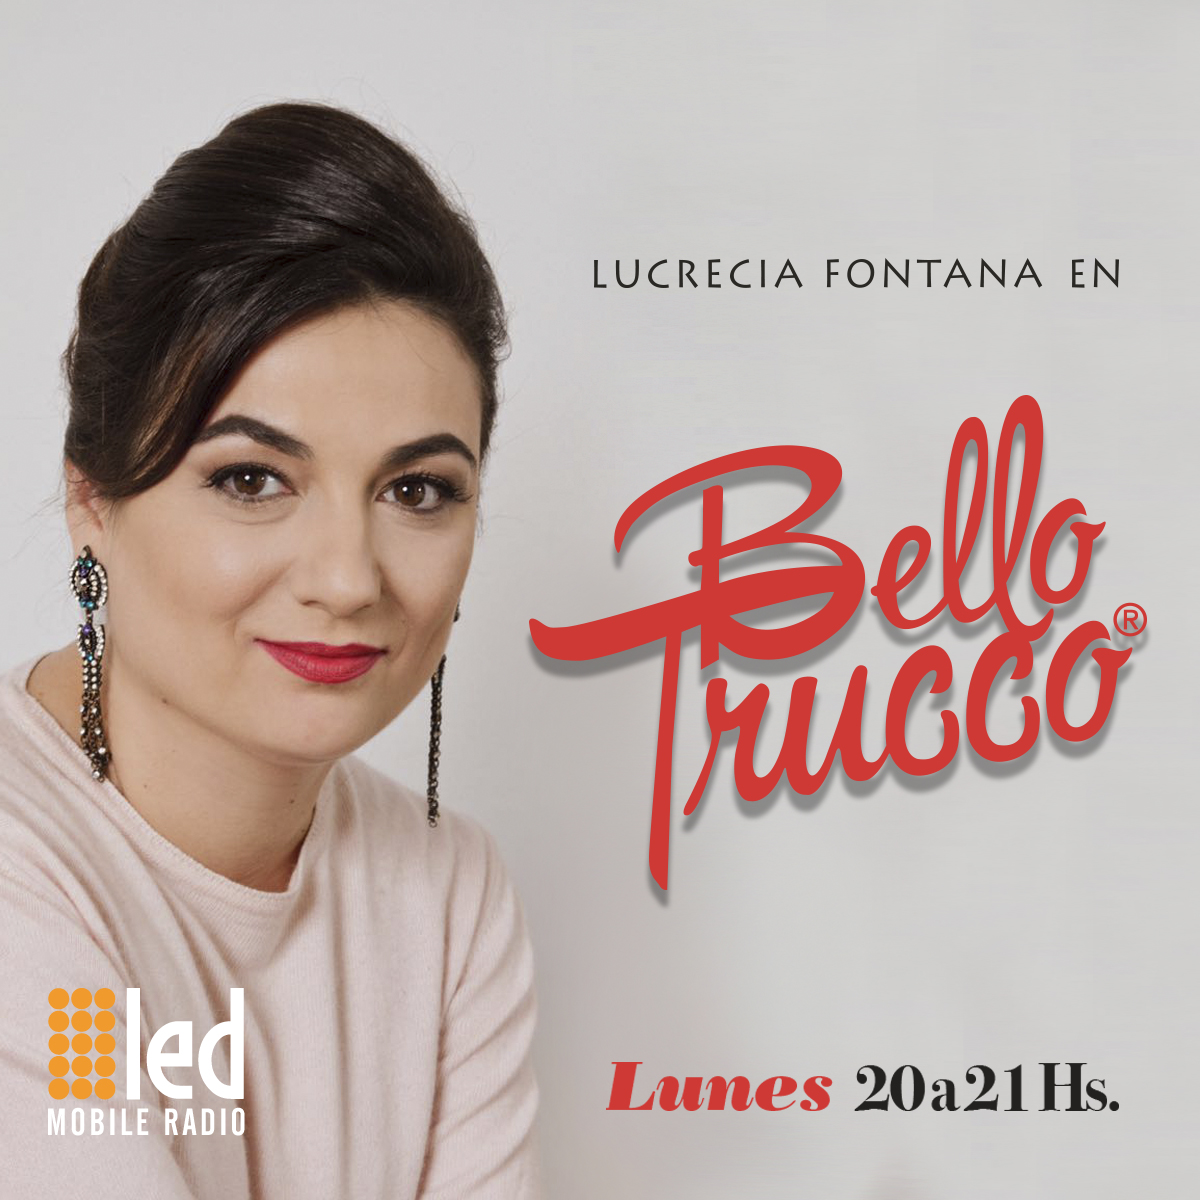 #Podcast Bello Trucco 31.07: María Graña, Fabio Cuggini y más!